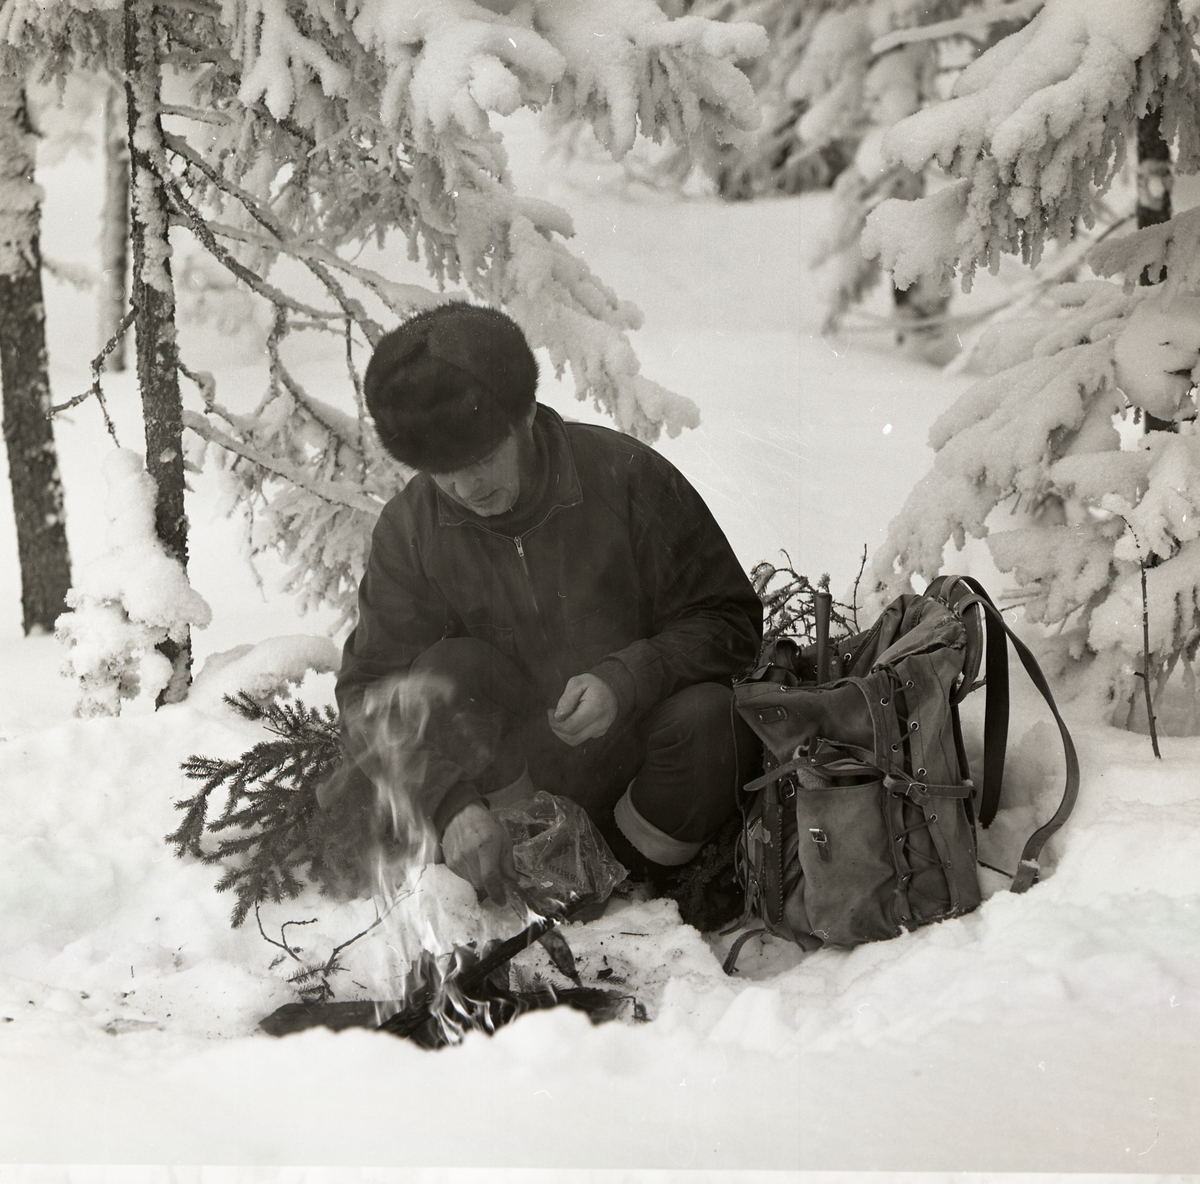 En man sitter på huk i snön och tänder en brasa den 24 februari 1970.